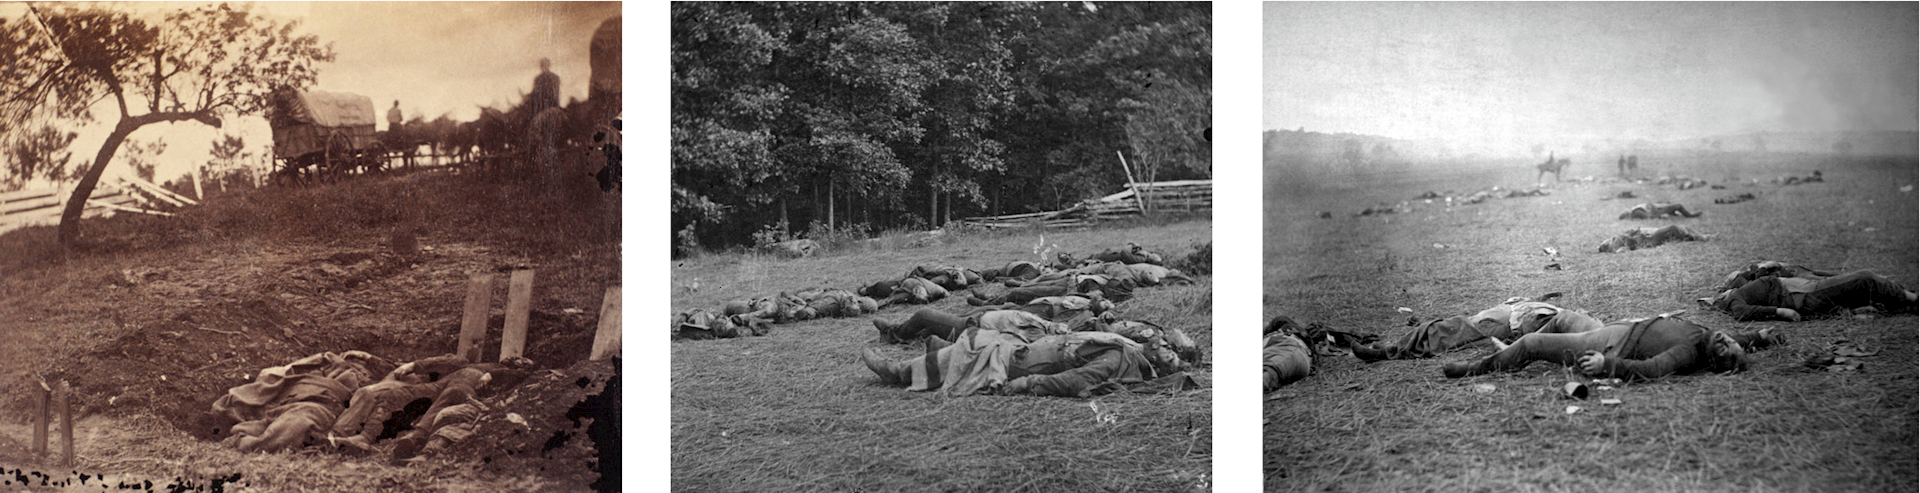 dead soldiers at Gettysburg